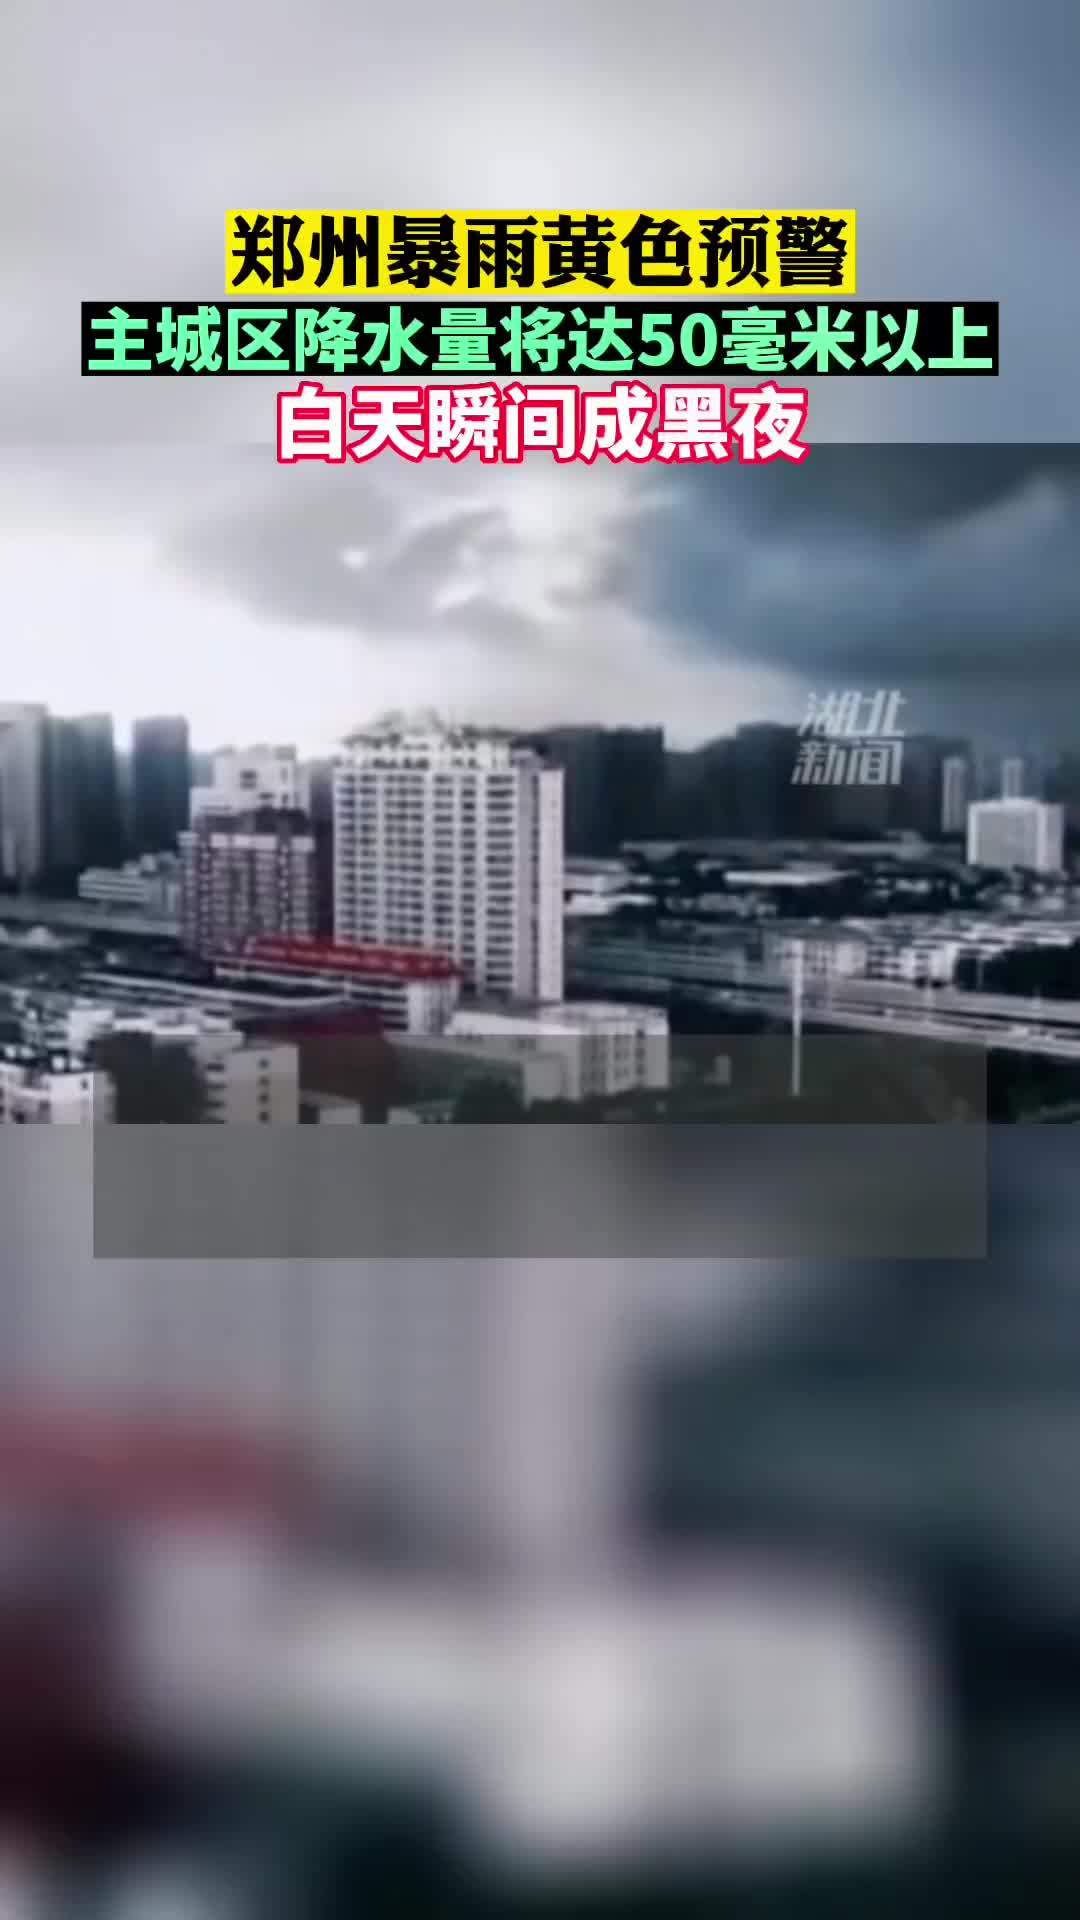 郑州暴雨来袭 白天瞬间成黑夜 郑州城区现罕见“绿色天空”_独家专稿_中国小康网